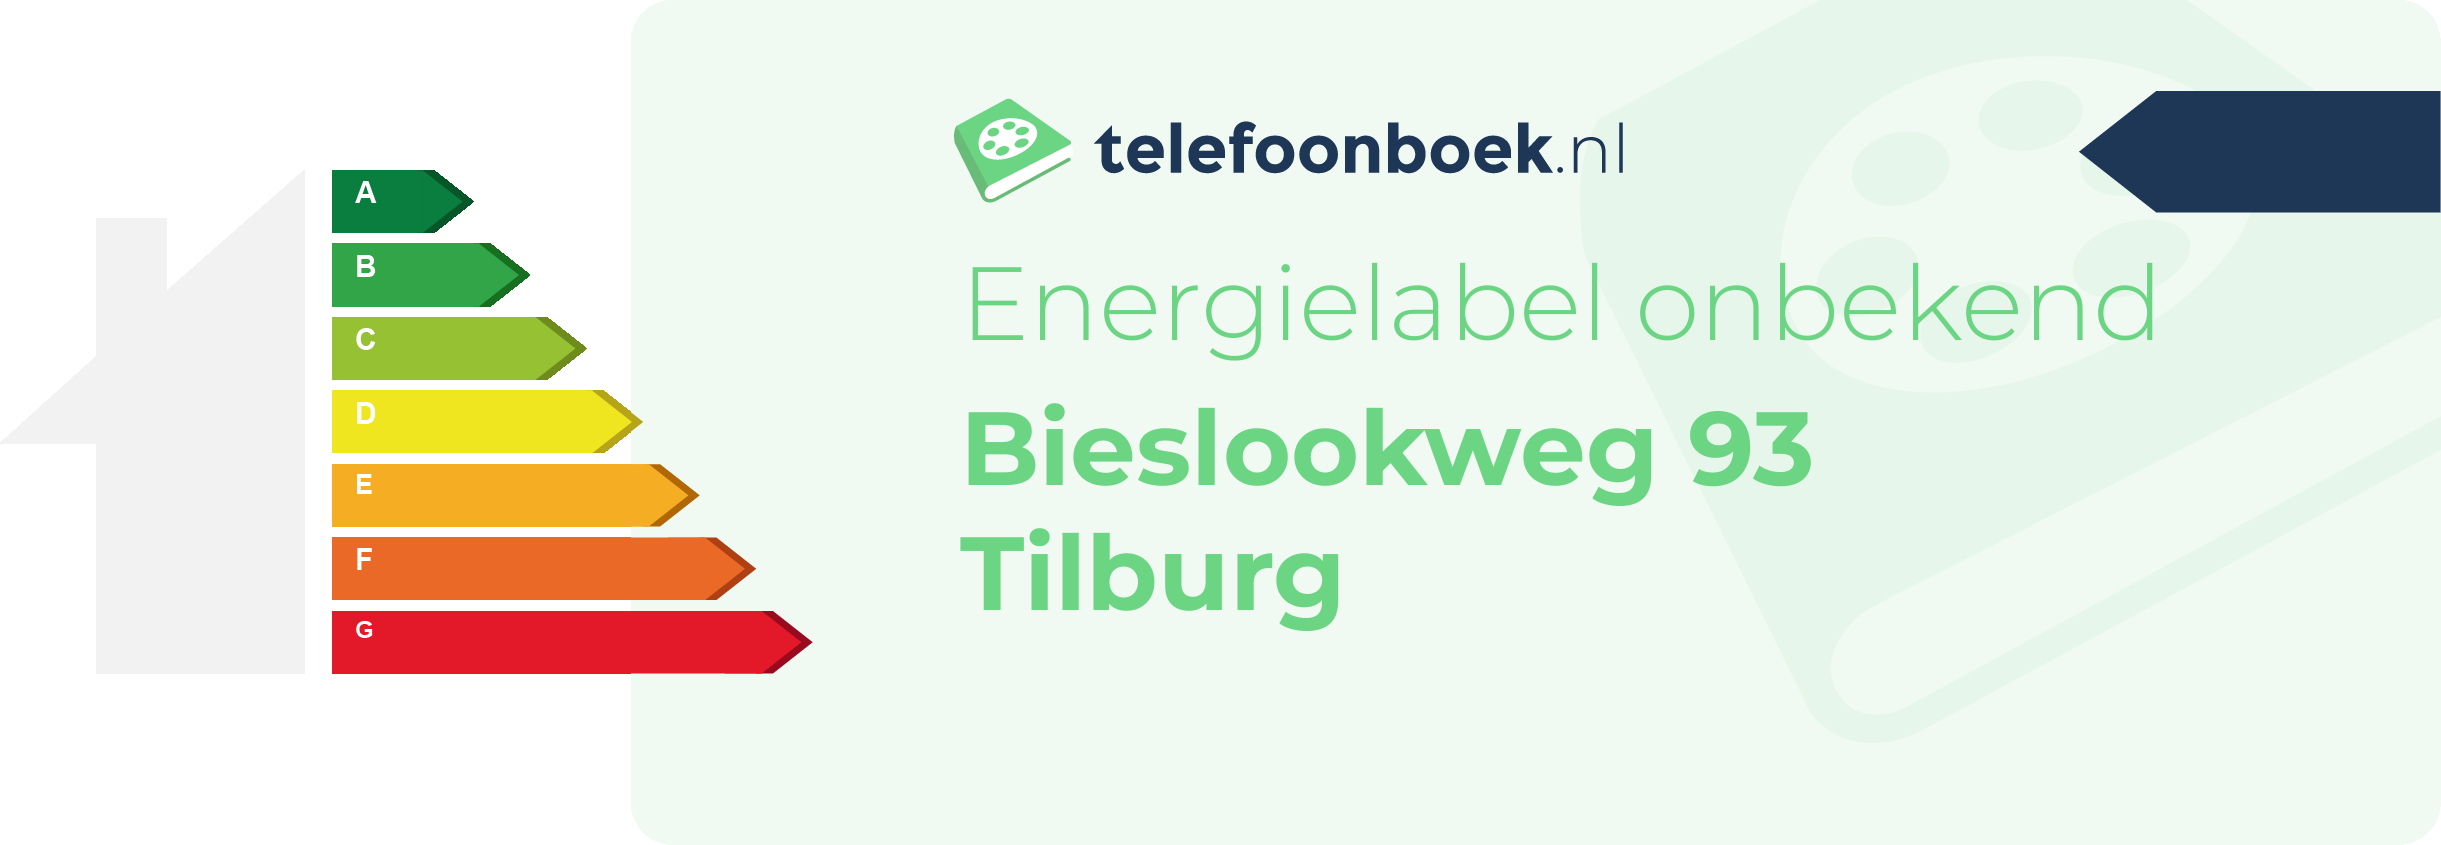 Energielabel Bieslookweg 93 Tilburg